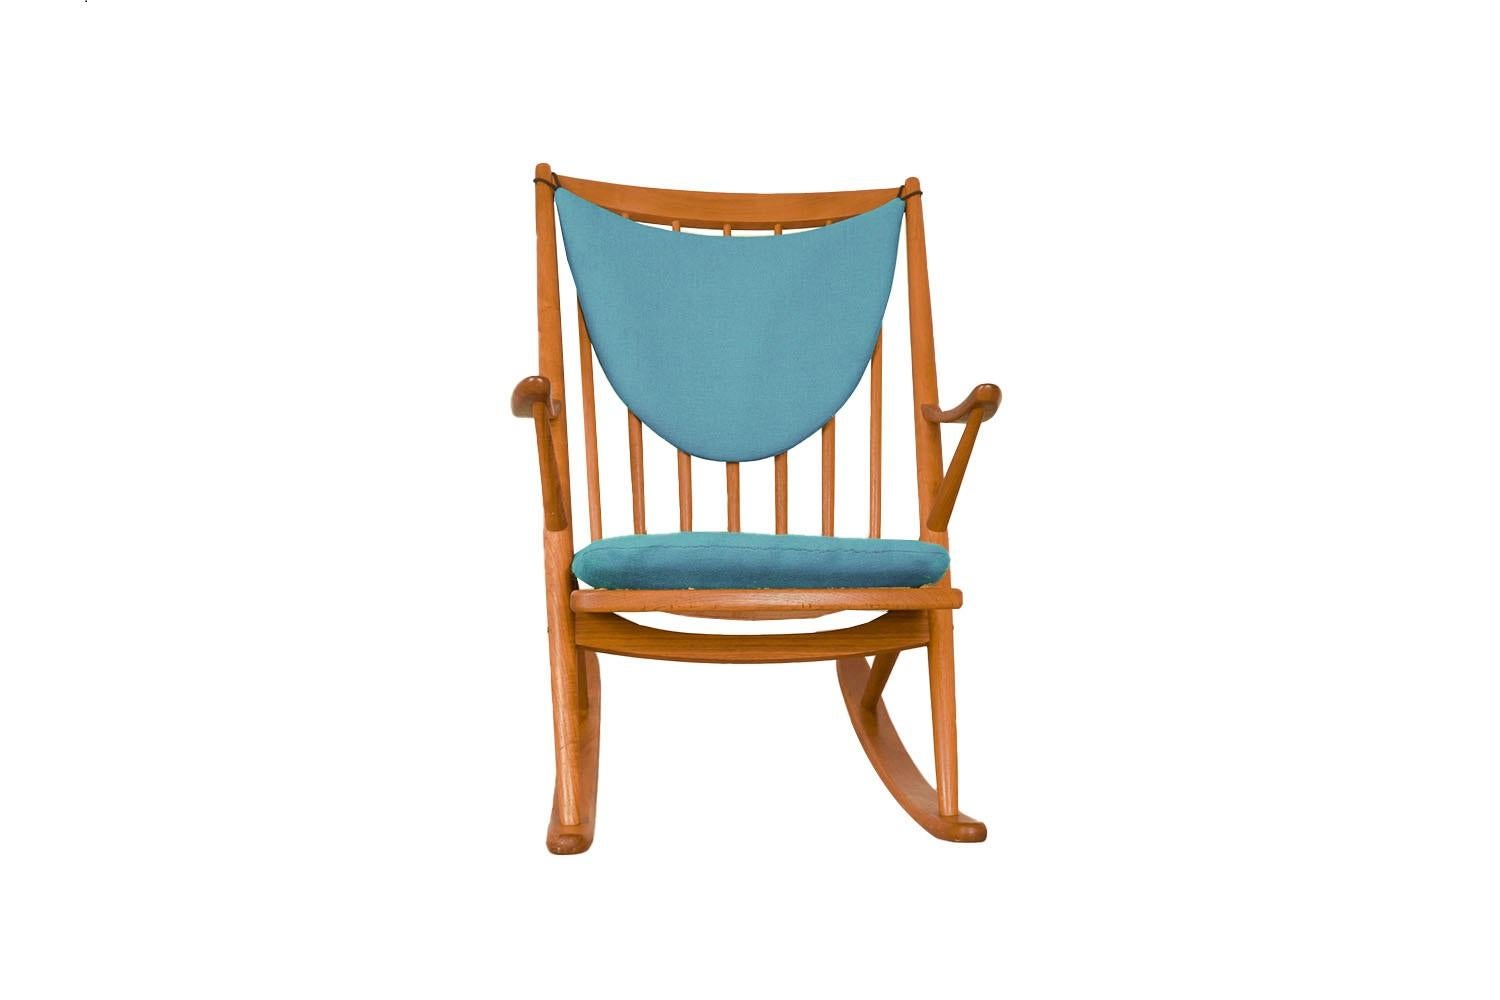 Auténtica mecedora danesa de teca de mediados del siglo XX, obra de Frank Reenskaug para Bramin (Brahmin). Esta magnífica silla de mediados de siglo se fabricó en 1958. Esta mecedora es del tipo 182. Es un ejemplar muy antiguo importado directamente